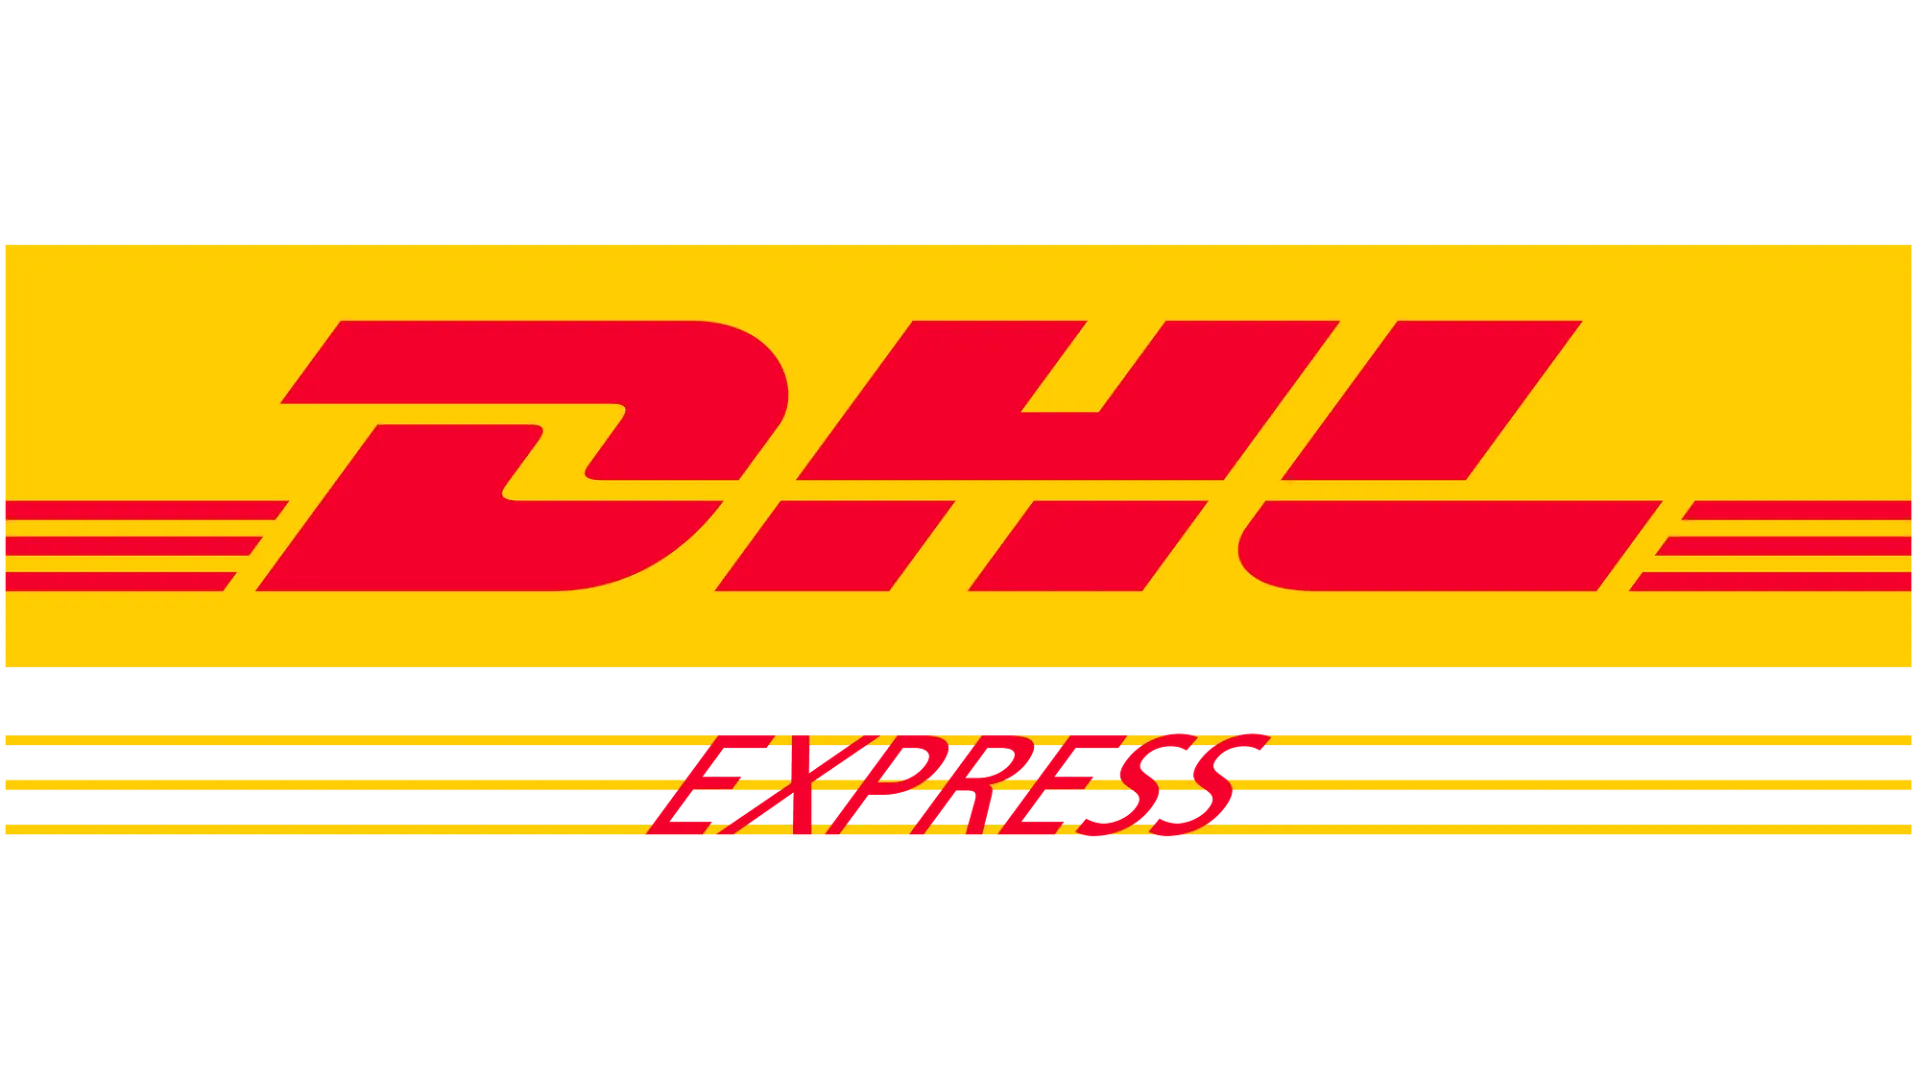 Логотип DHL